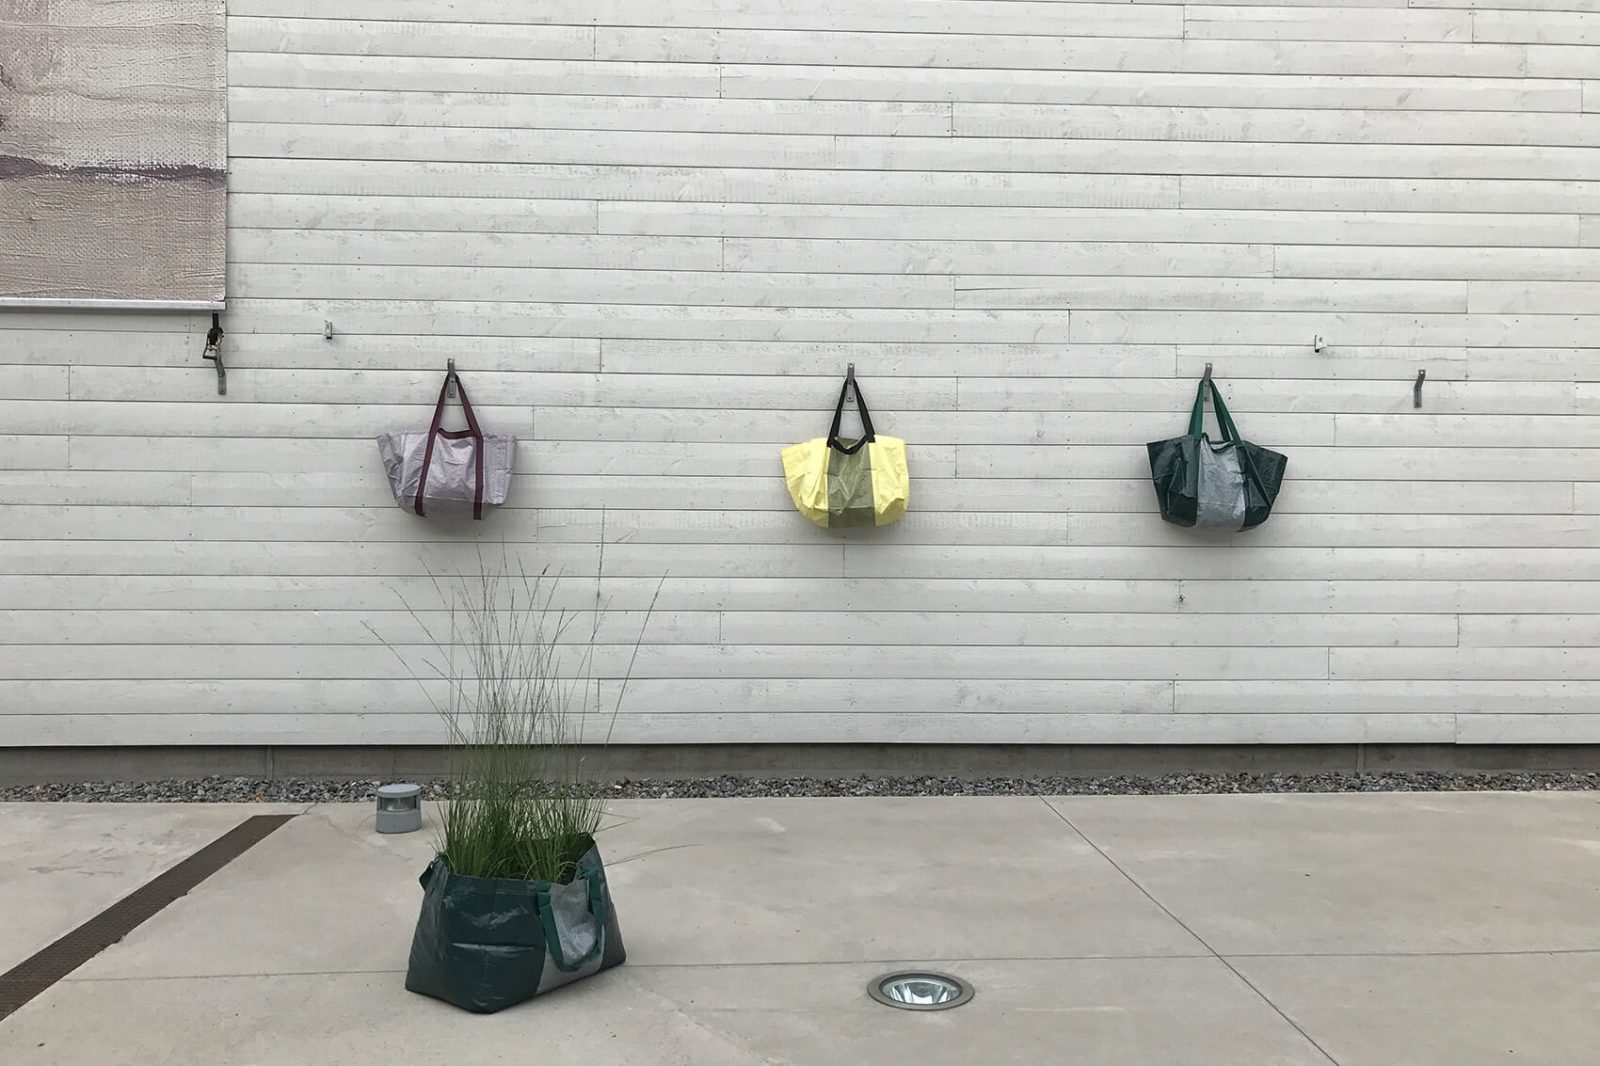 Väskor som hänger på entrégårdens vägg